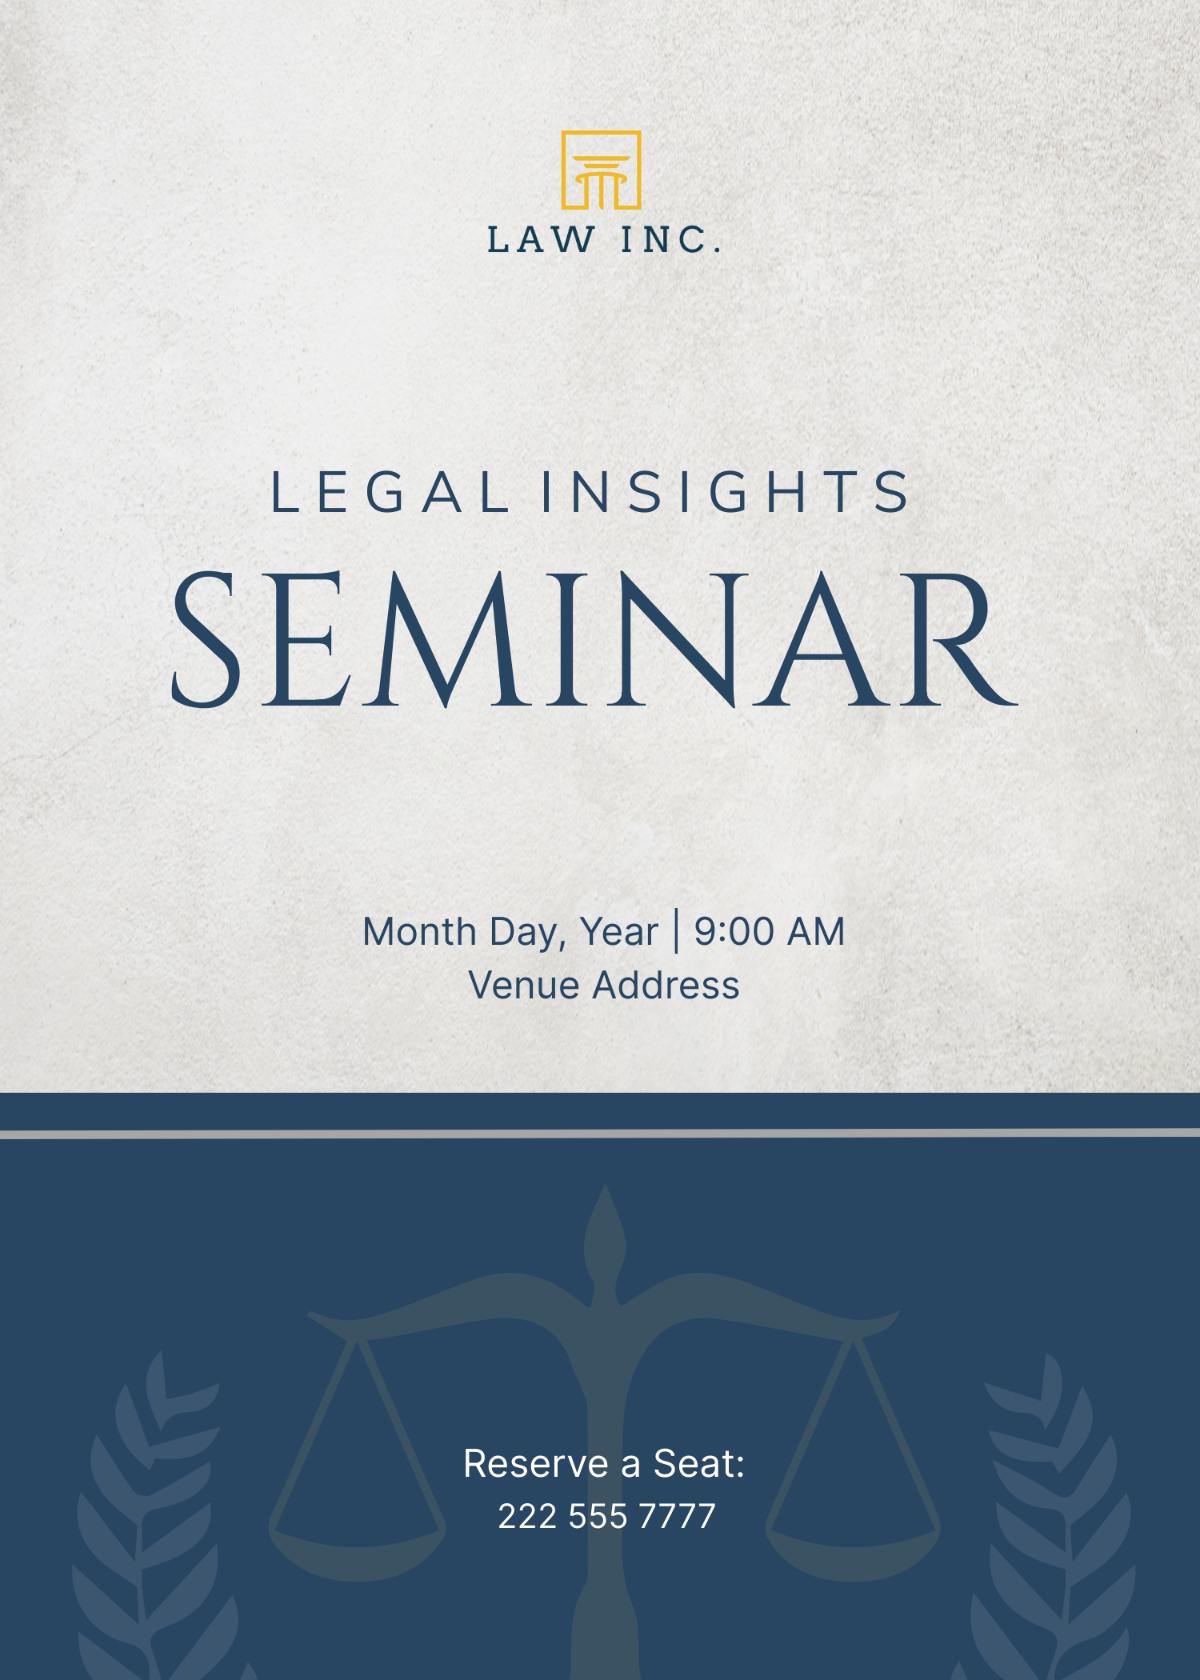 Law Firm Seminar Invitation Template